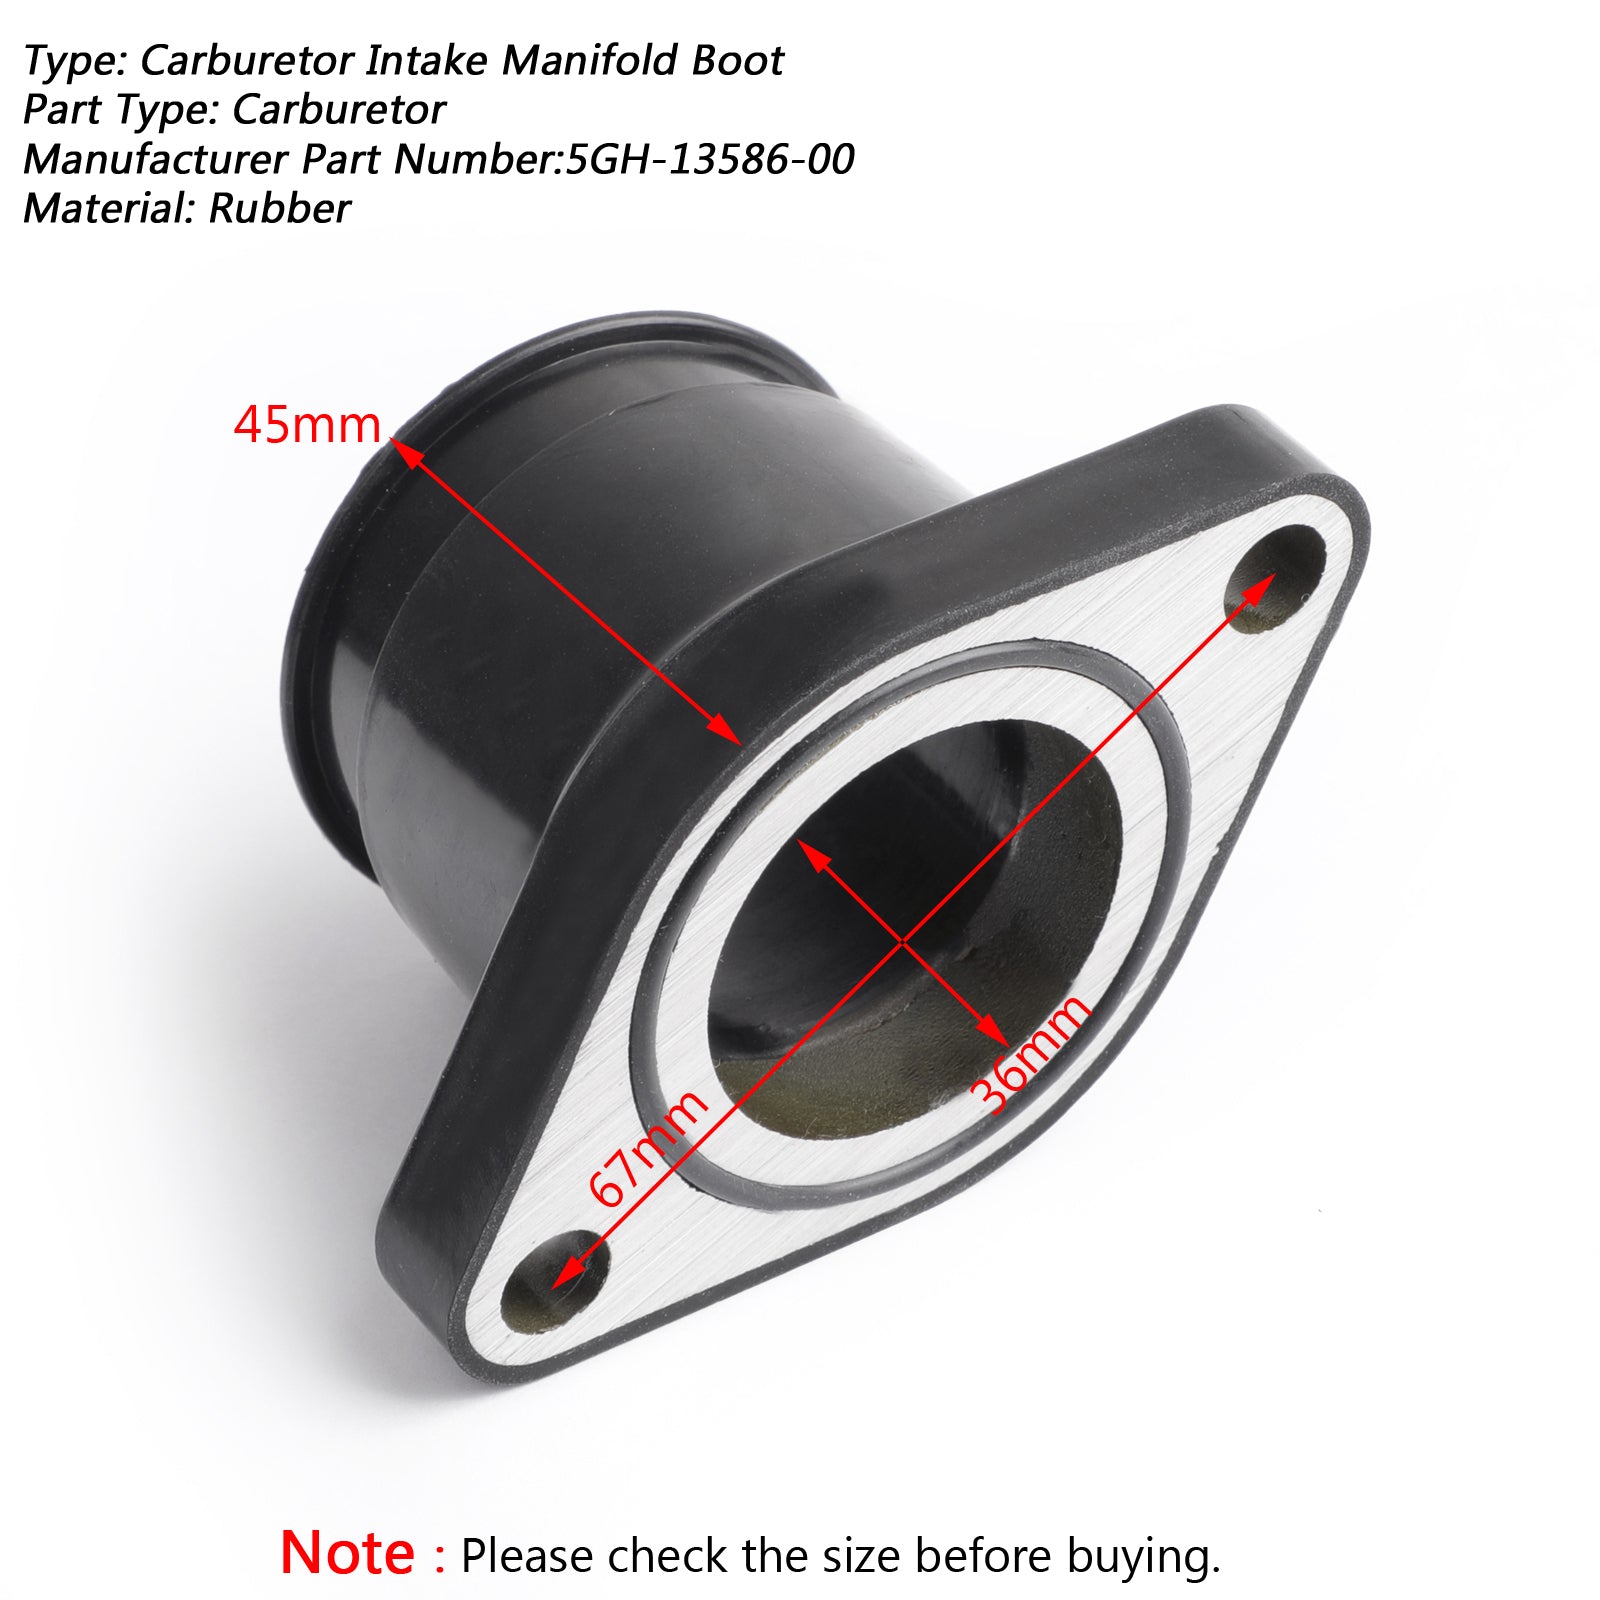 Carburetor Intake Manifold Insulator Boot for Yamaha Kodiak 400 450 5GH-13586-00